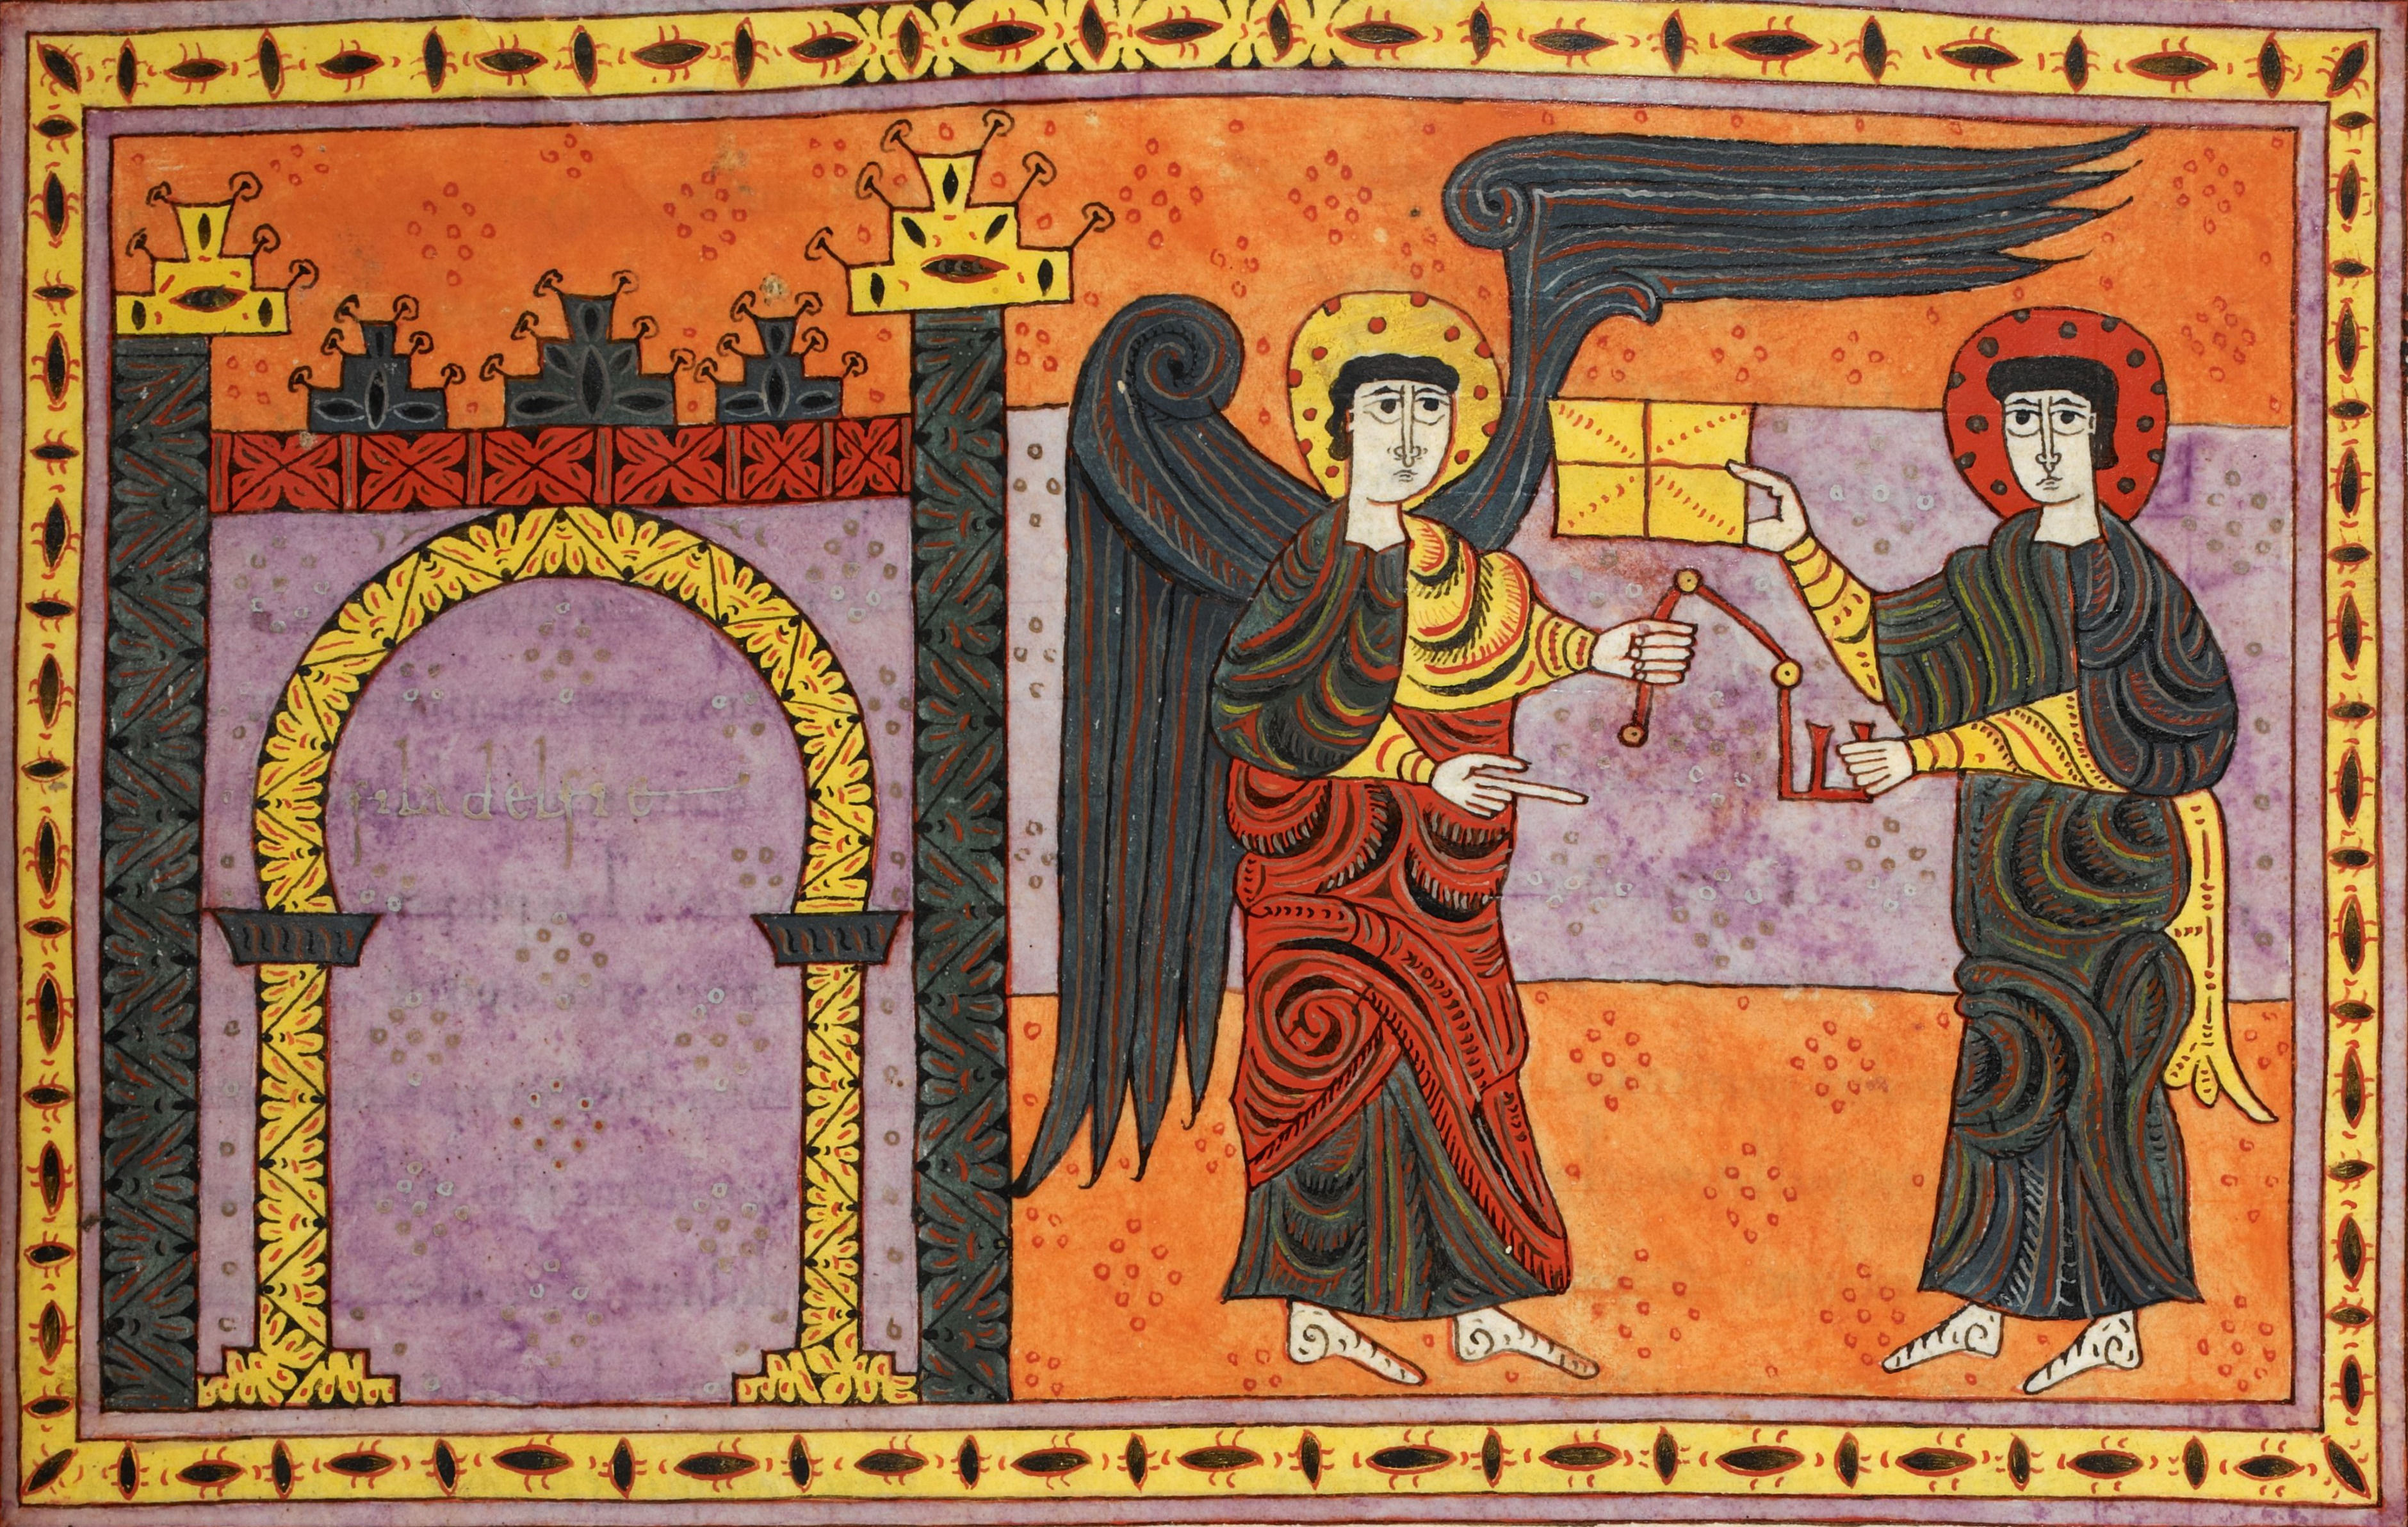 Beatus de Silos, folio 72r a – Lettre à l’ange de l’église de Philadelphie (Ap 3, 7-13). Le symbole de la clef de David (sur le même modèle que la clef de l’Abîme en Ap 9, 1), omniprésent dans ce manuscrit, fait référence à l’ouverture d’une porte (Ap 3, 7-8).